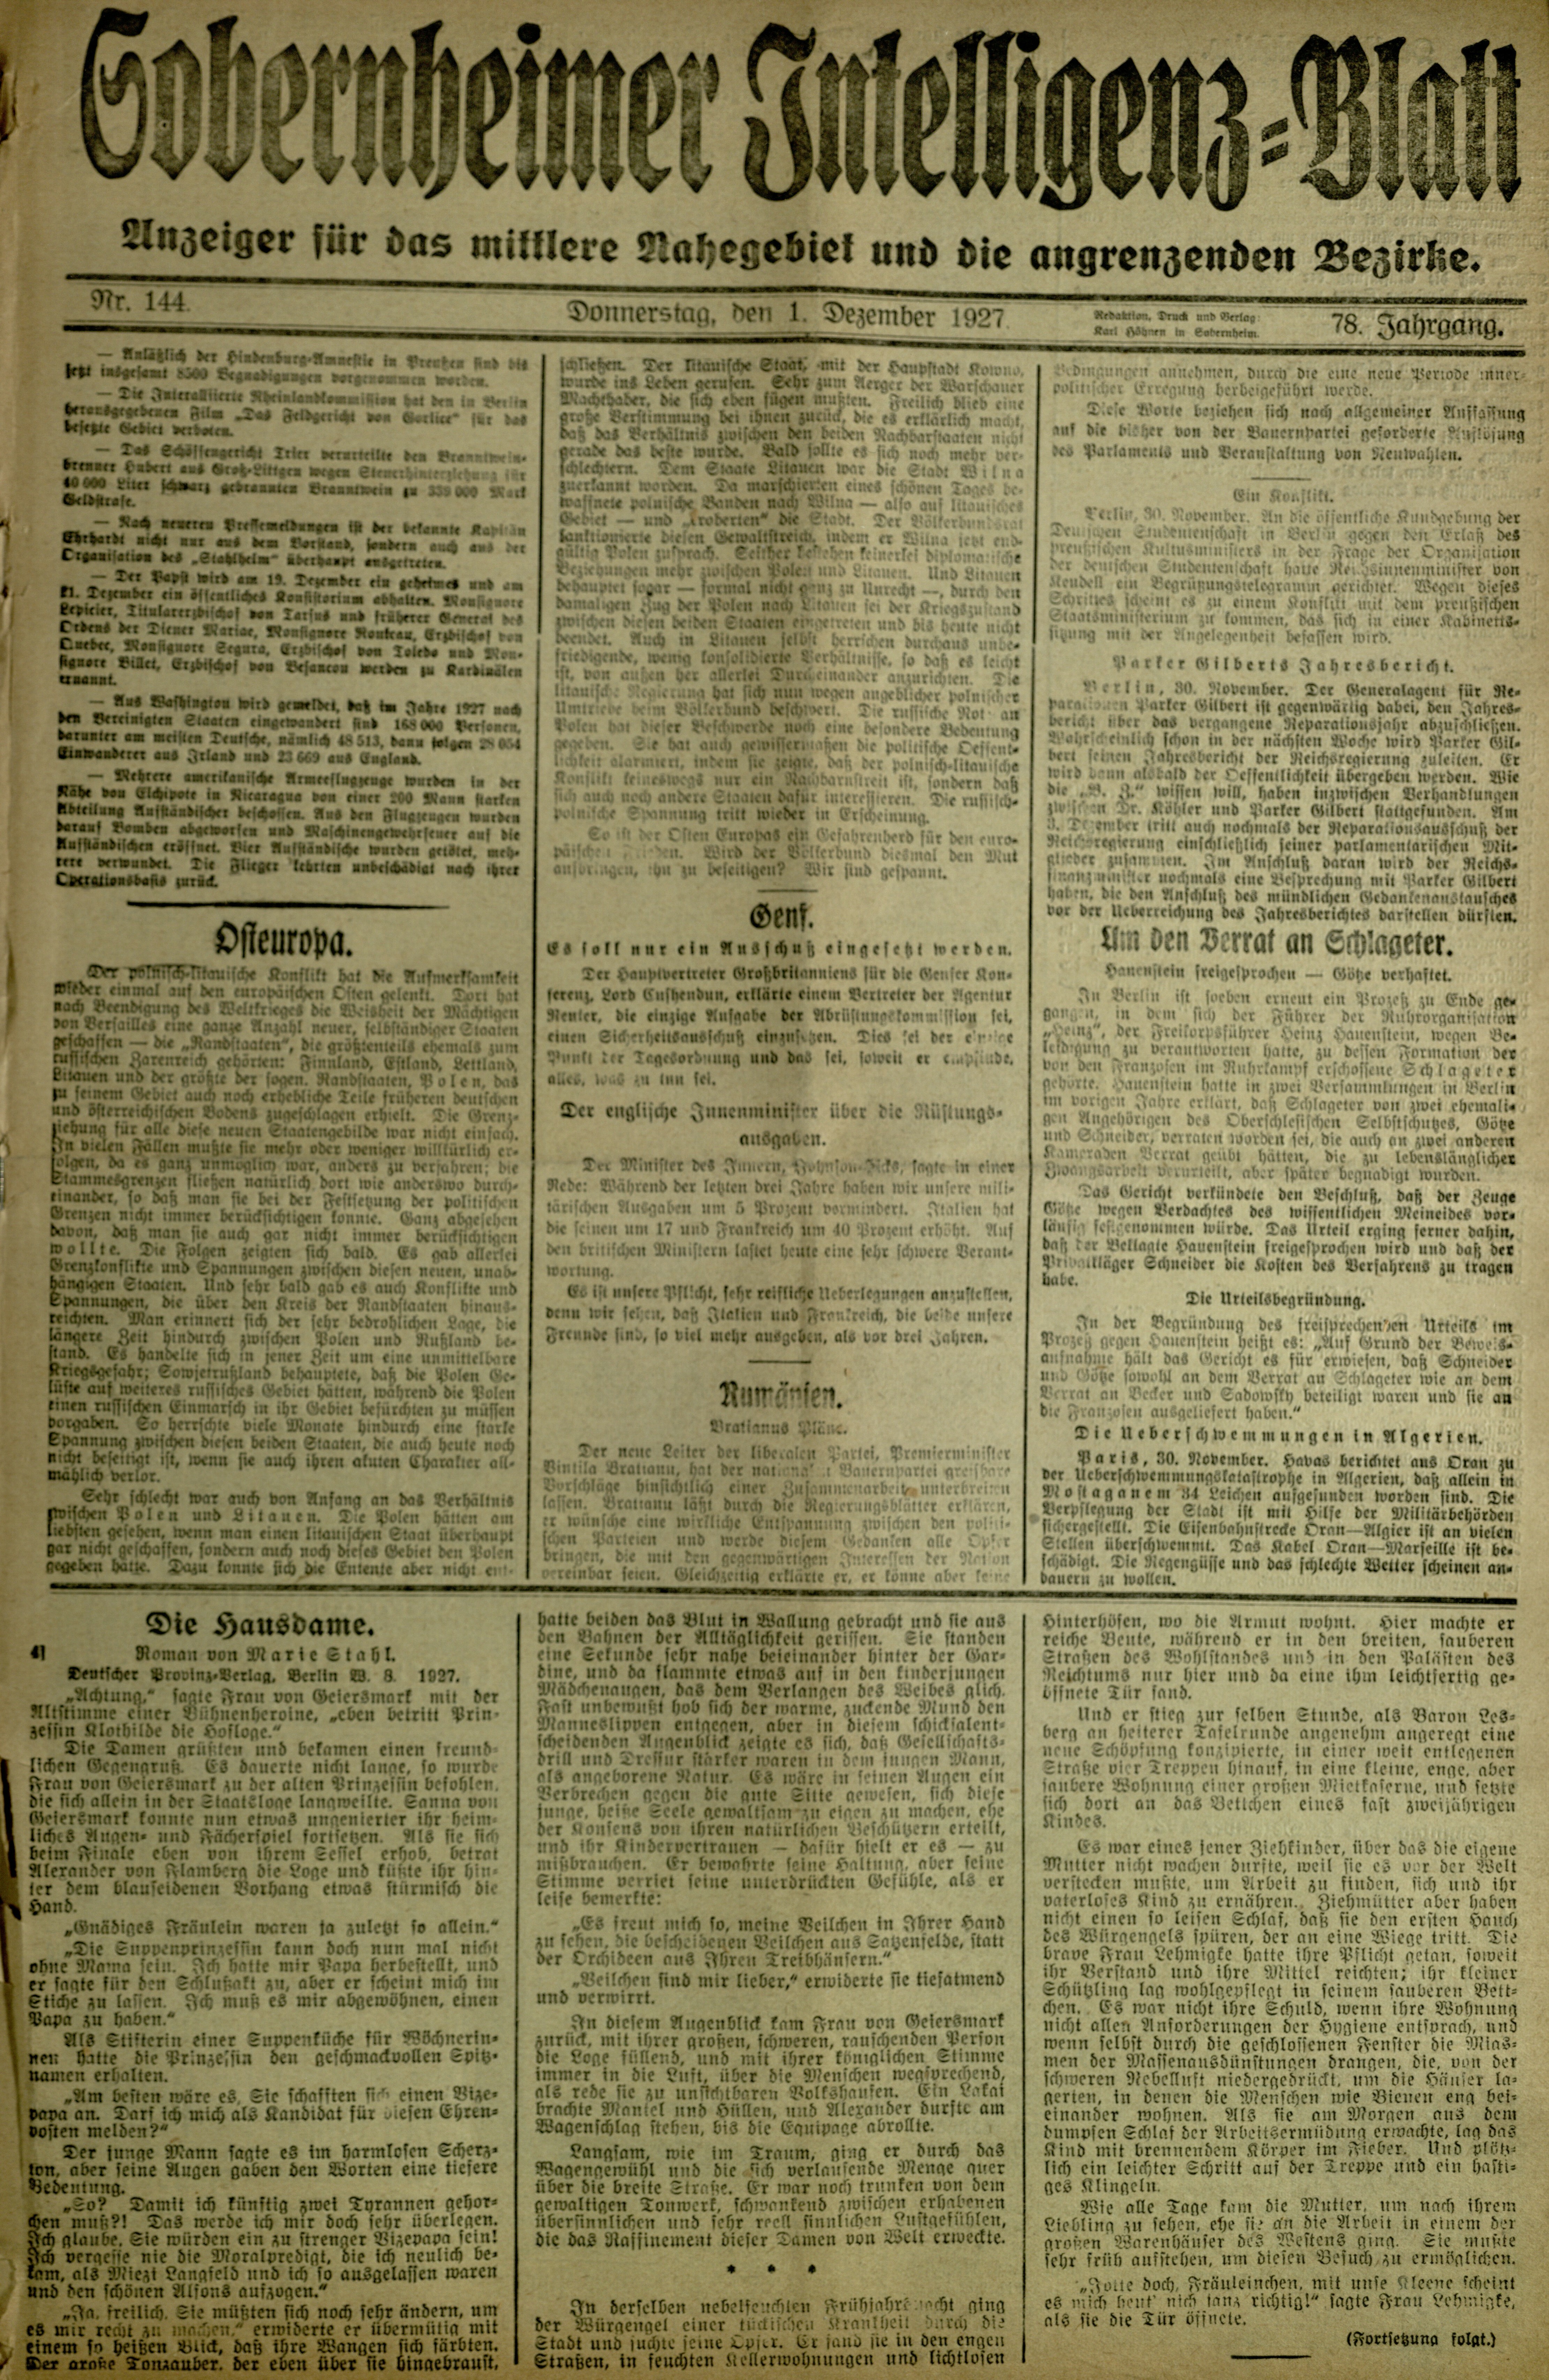 Zeitung: Sobernheimer Intelligenzblatt; Dezember 1927, Jg. 78 Nr. 144 (Heimatmuseum Bad Sobernheim CC BY-NC-SA)